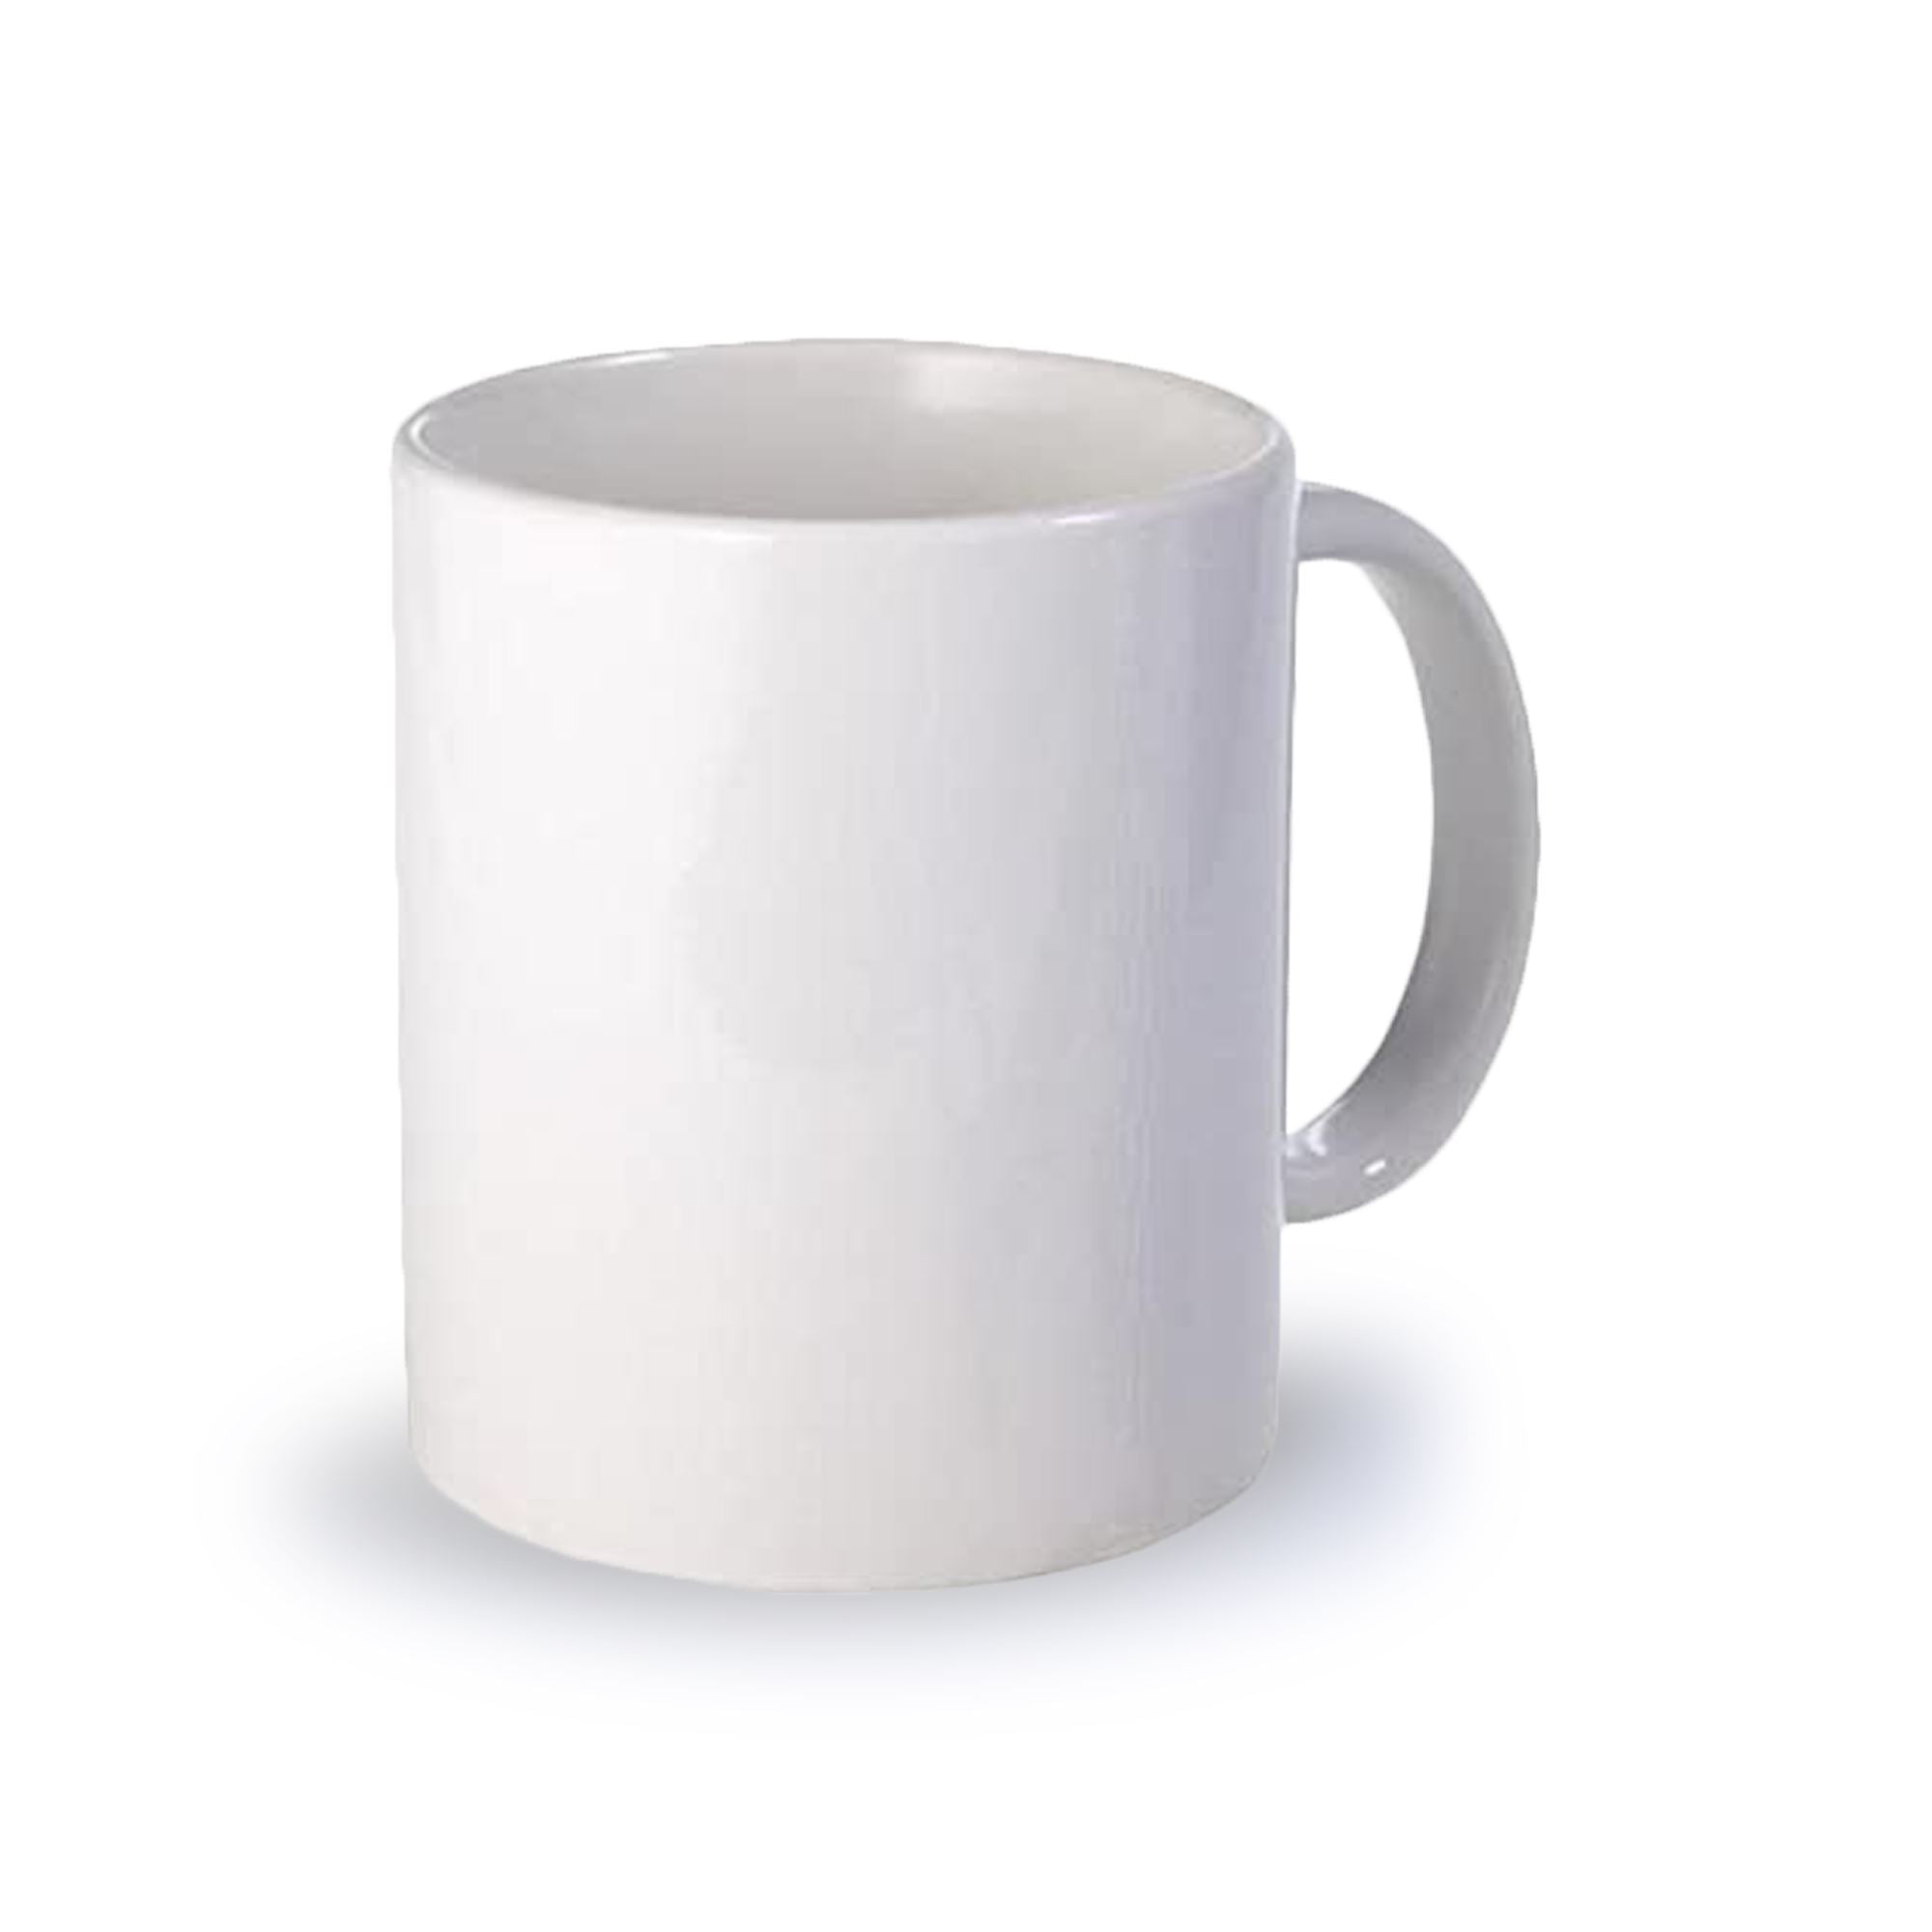 11oz white Sublimaiton Mugs ,Heat Tranfer White Blank Mugs